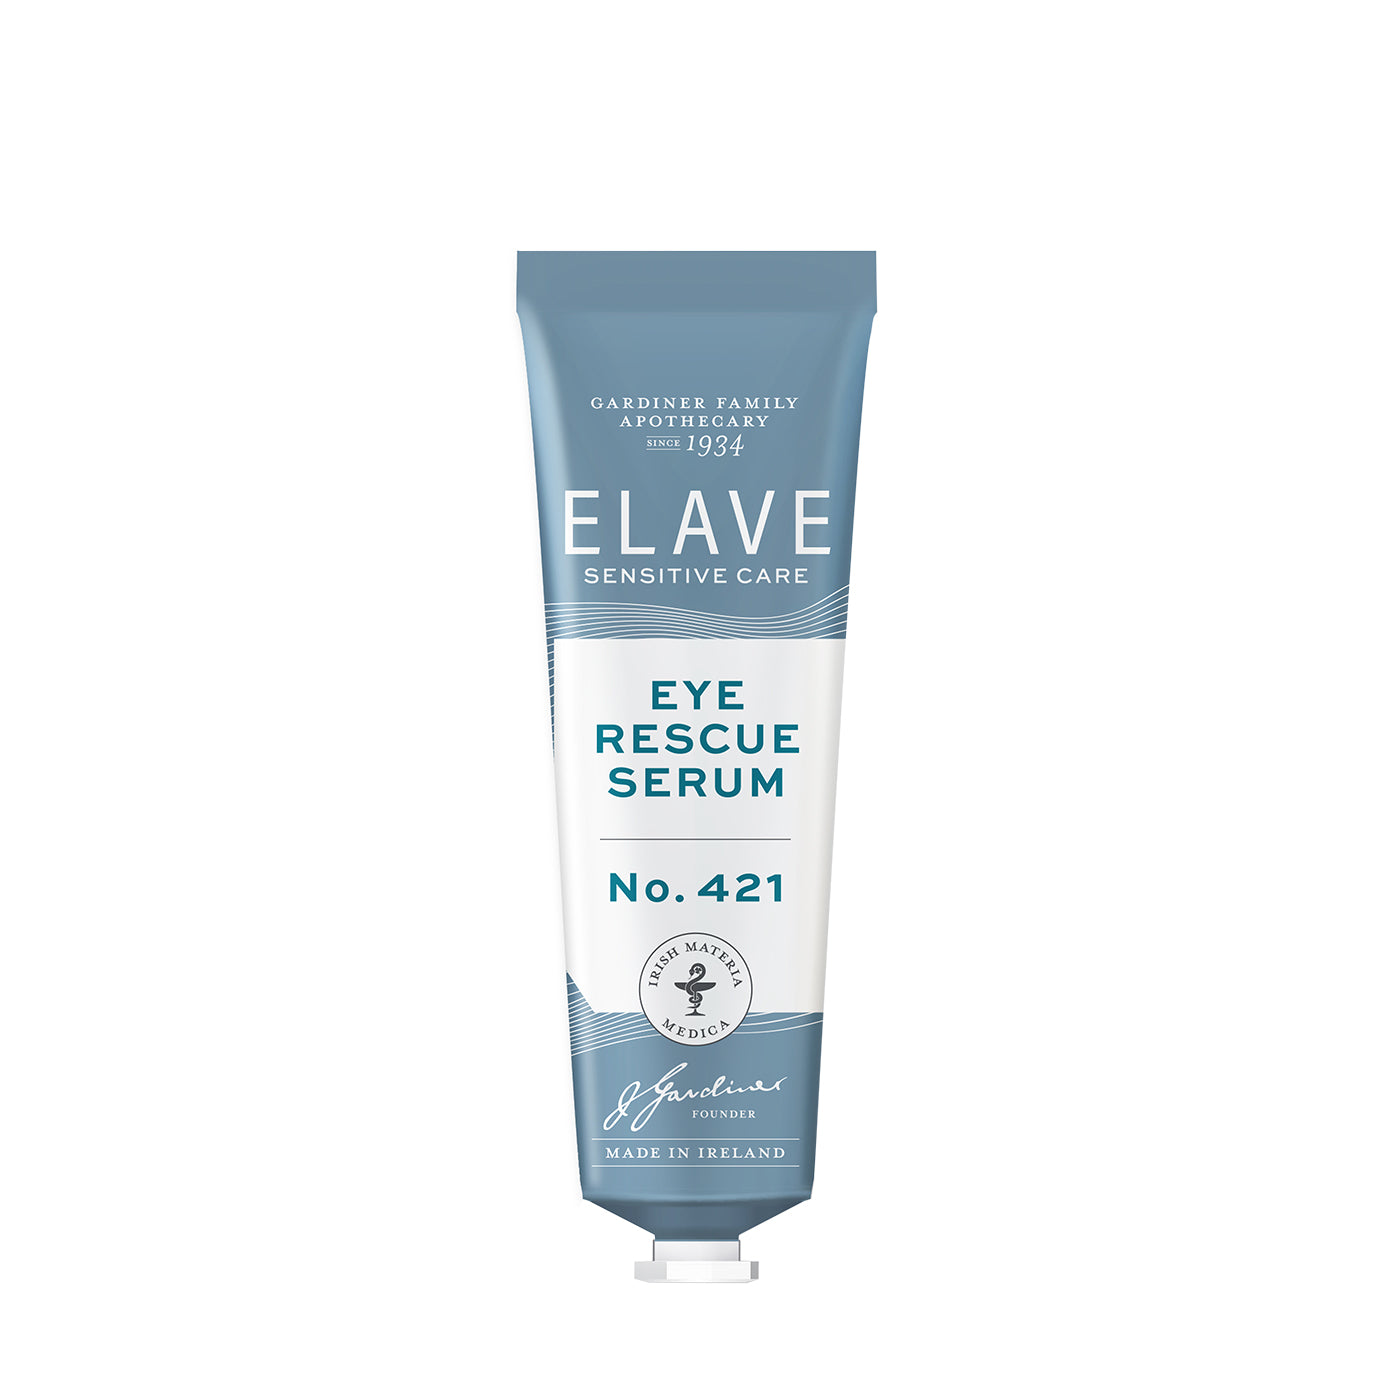 Elave Eye Rescue Serum